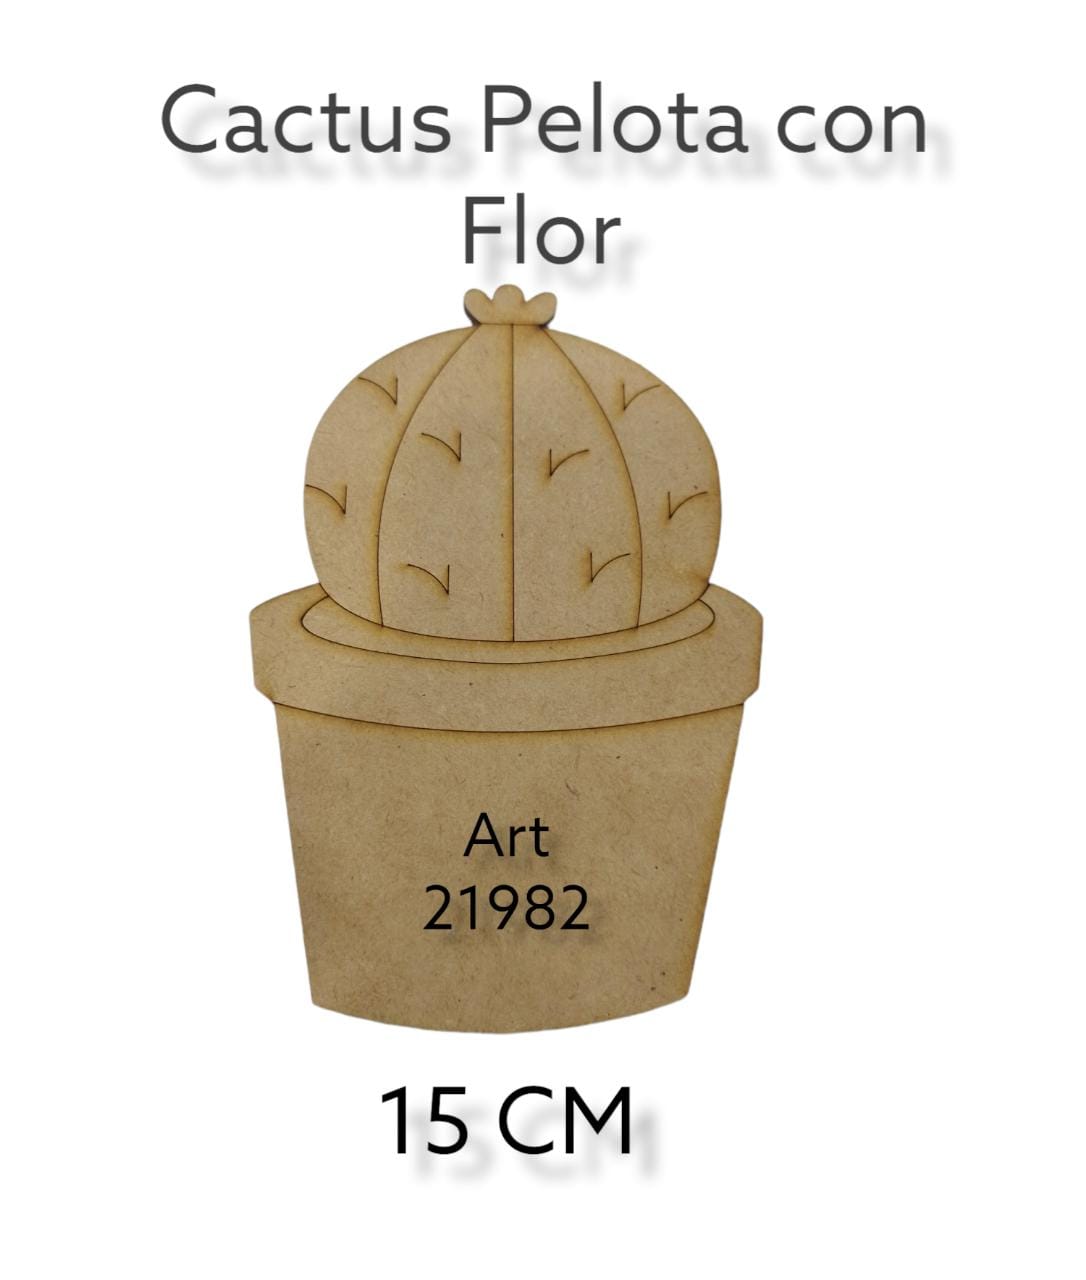 Figura cactus pelota con flor 15 cm 